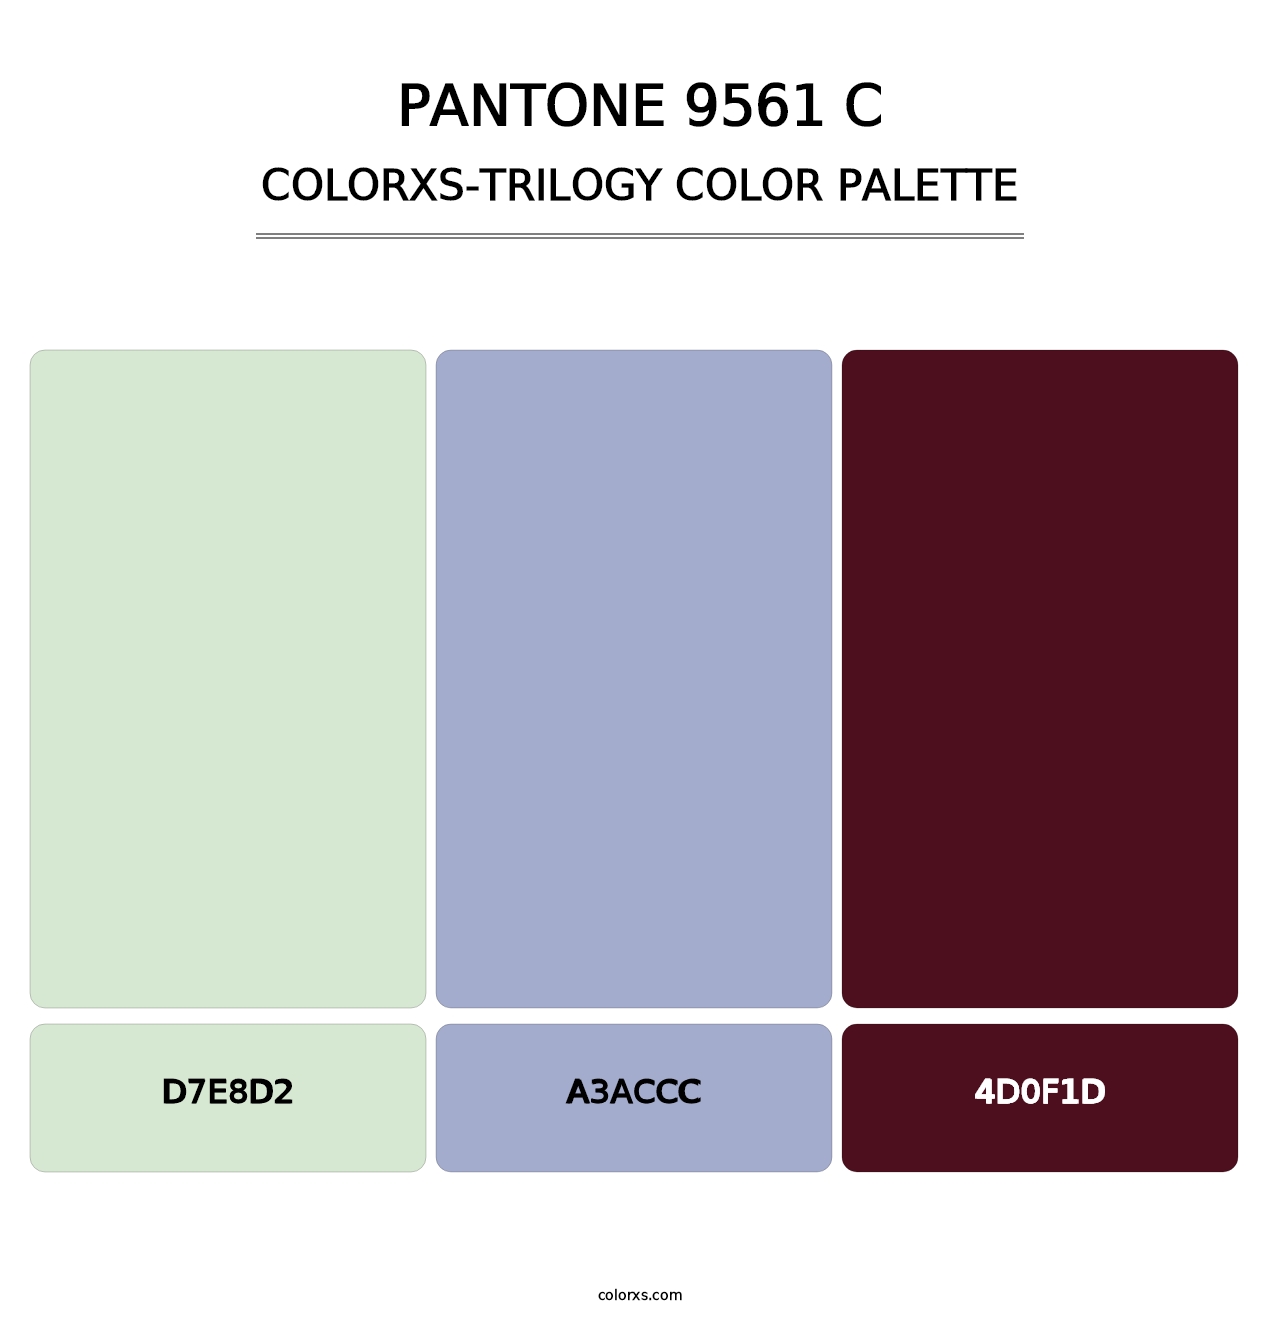 PANTONE 9561 C - Colorxs Trilogy Palette